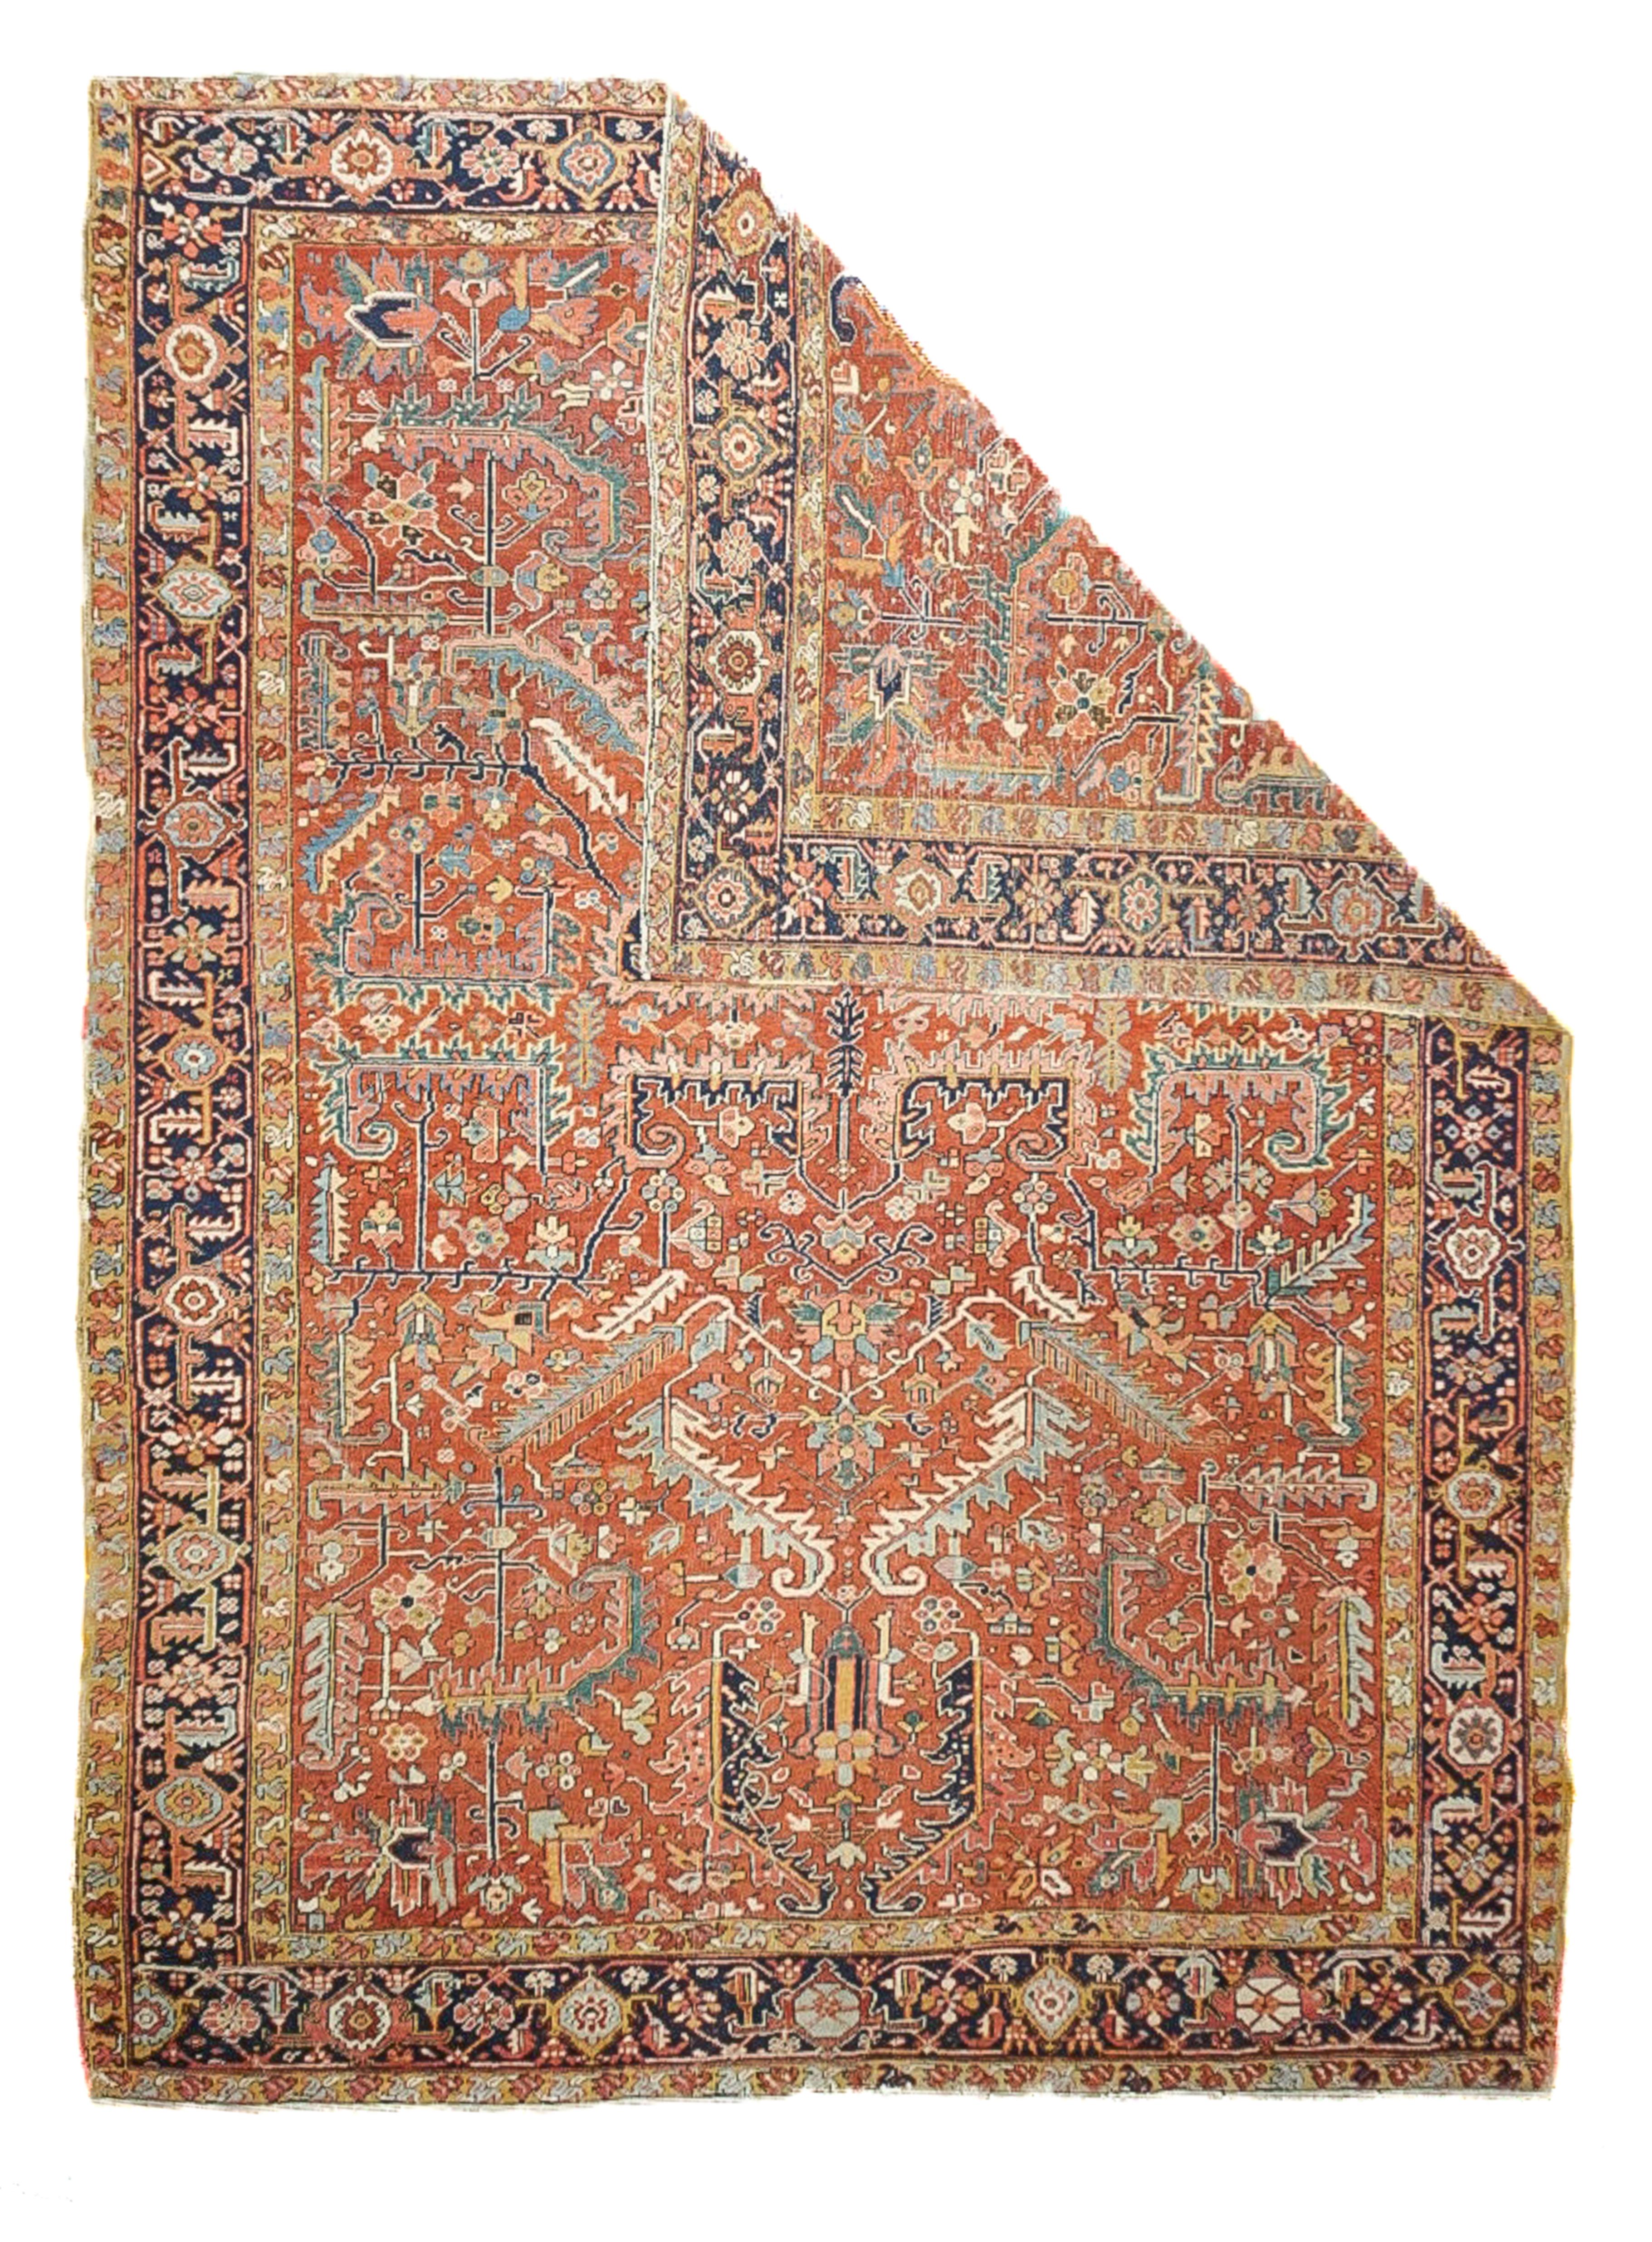 Antique Heriz rug. Measures: 9.2'' x 12.2''.